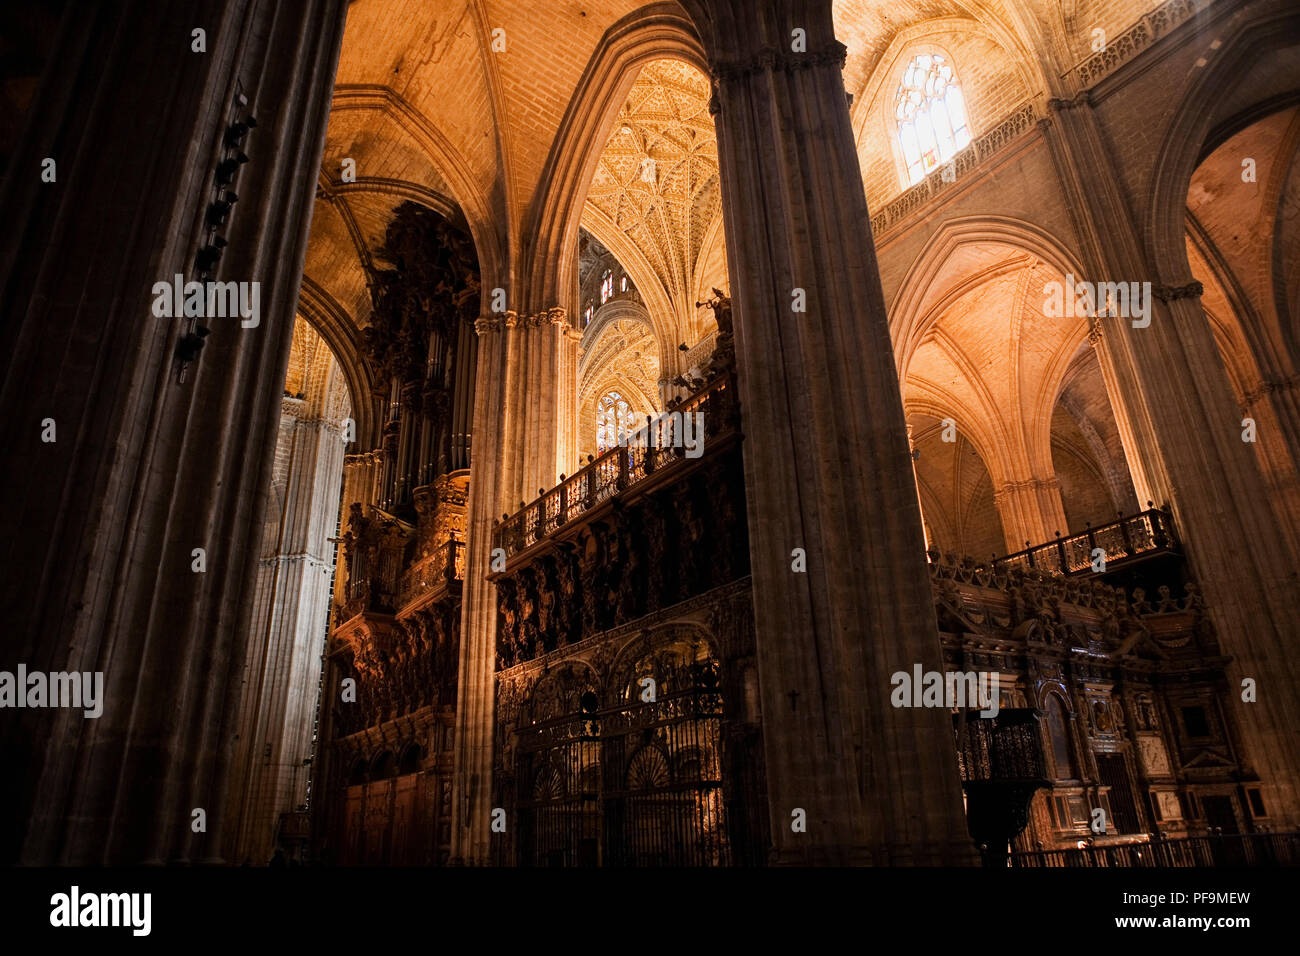 Choeur et orgue, Cathédrale de Santa María de la Sede, Sevilla, Espagne. La Cathédrale de Séville est la plus grande église gothique dans le monde Banque D'Images